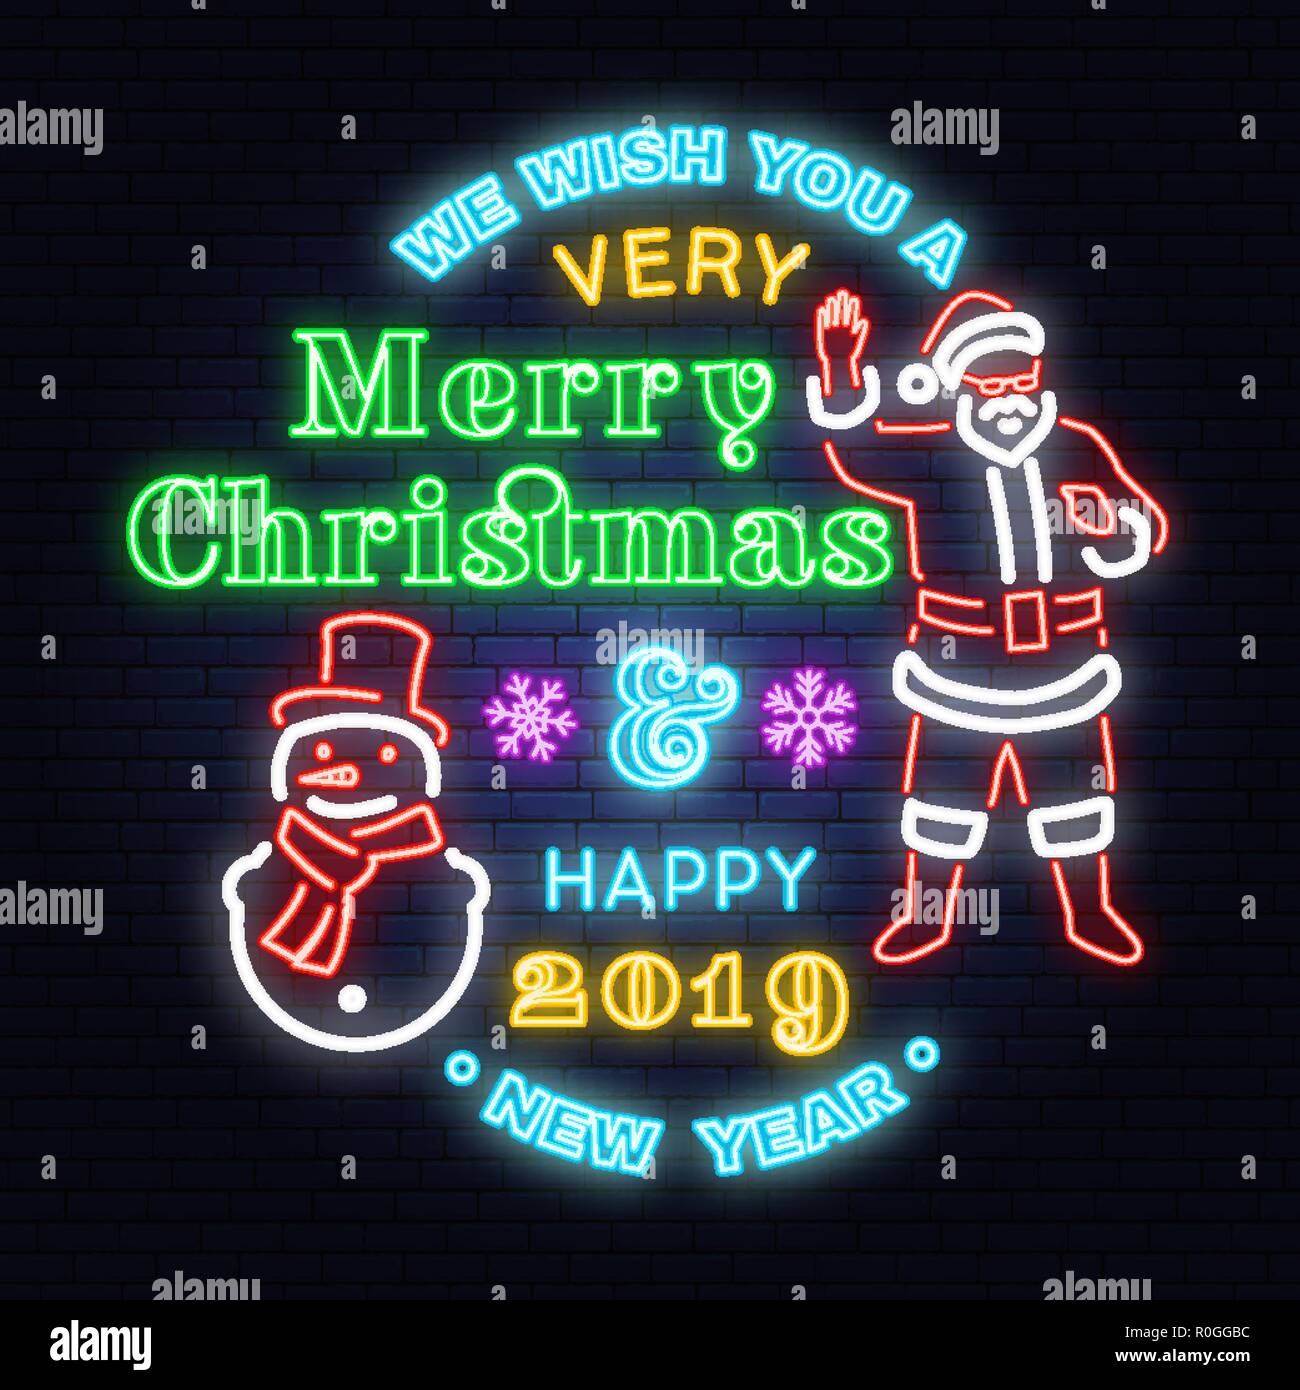 Le deseamos una muy Feliz Navidad y Próspero Año Nuevo cartel de neón con el muñeco de nieve y Santa Claus. Vector. Diseño de neón para navidad, año nuevo emblema luminoso cartel, banner de luz. Noche cartel Ilustración del Vector